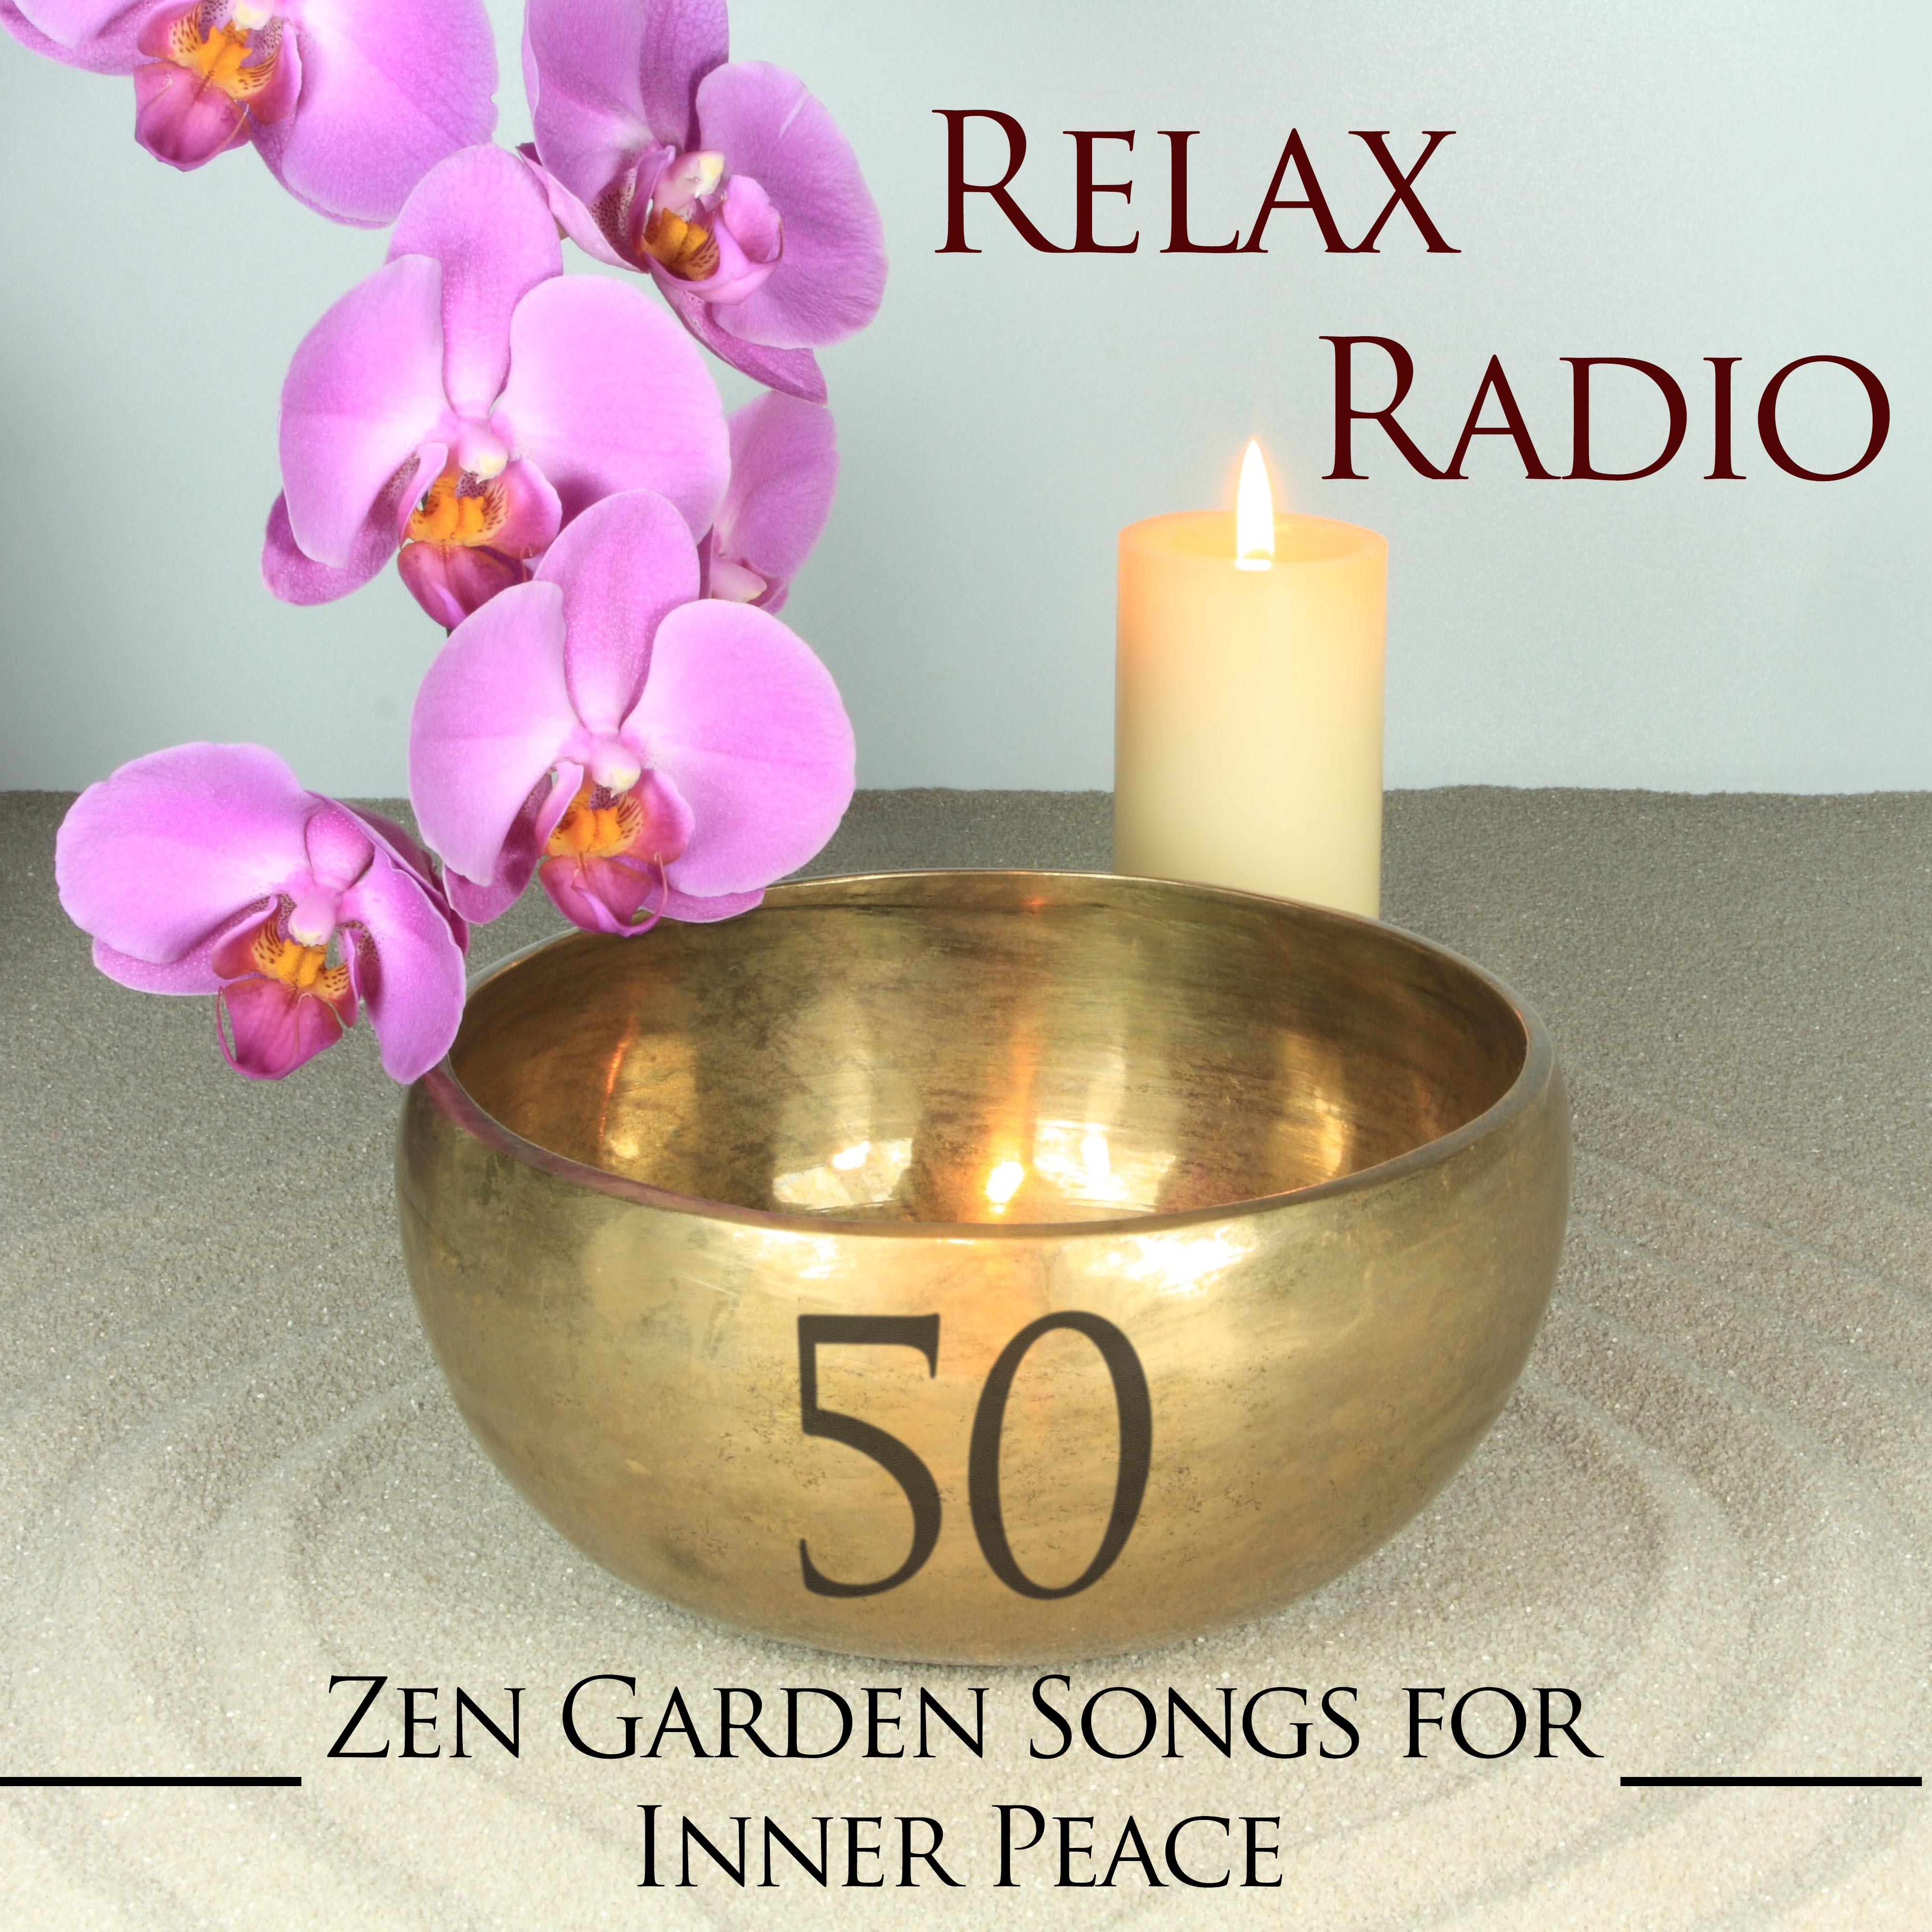 Relax Radio - 50 Zen Garden Songs for Inner Peace